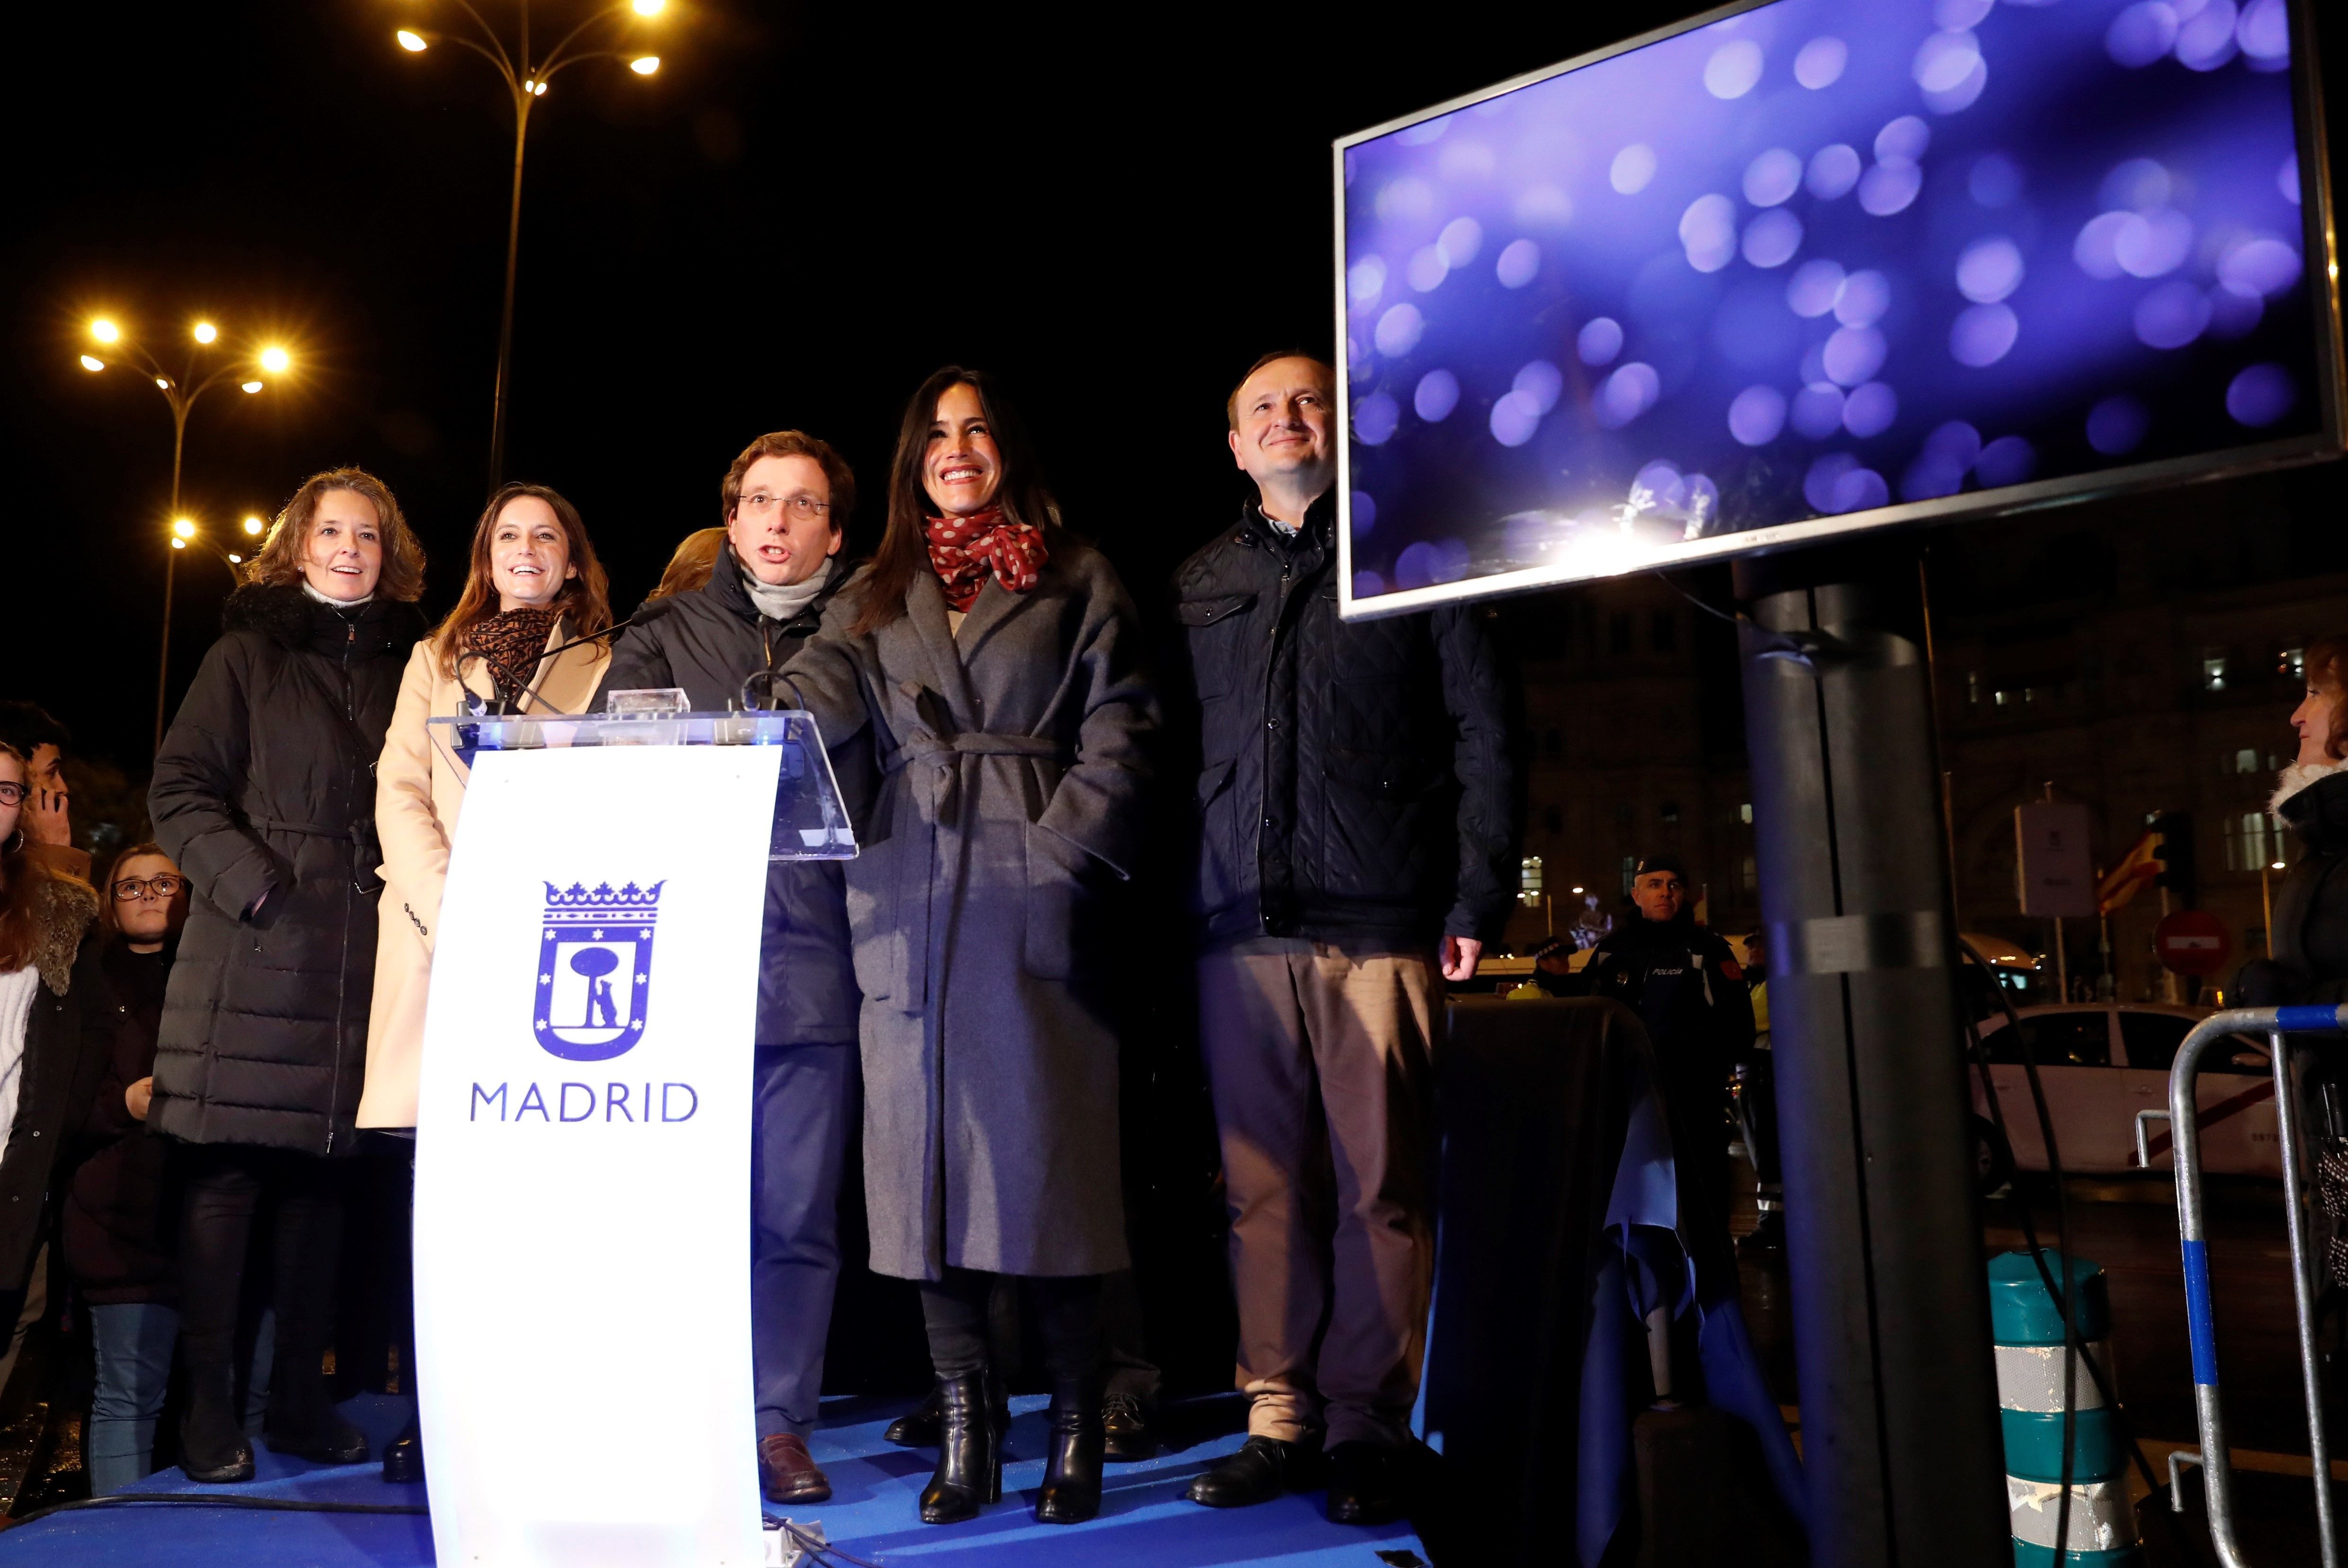 VÍDEO: El desencarrilat compte enrere nadalenc de l'alcalde de Madrid